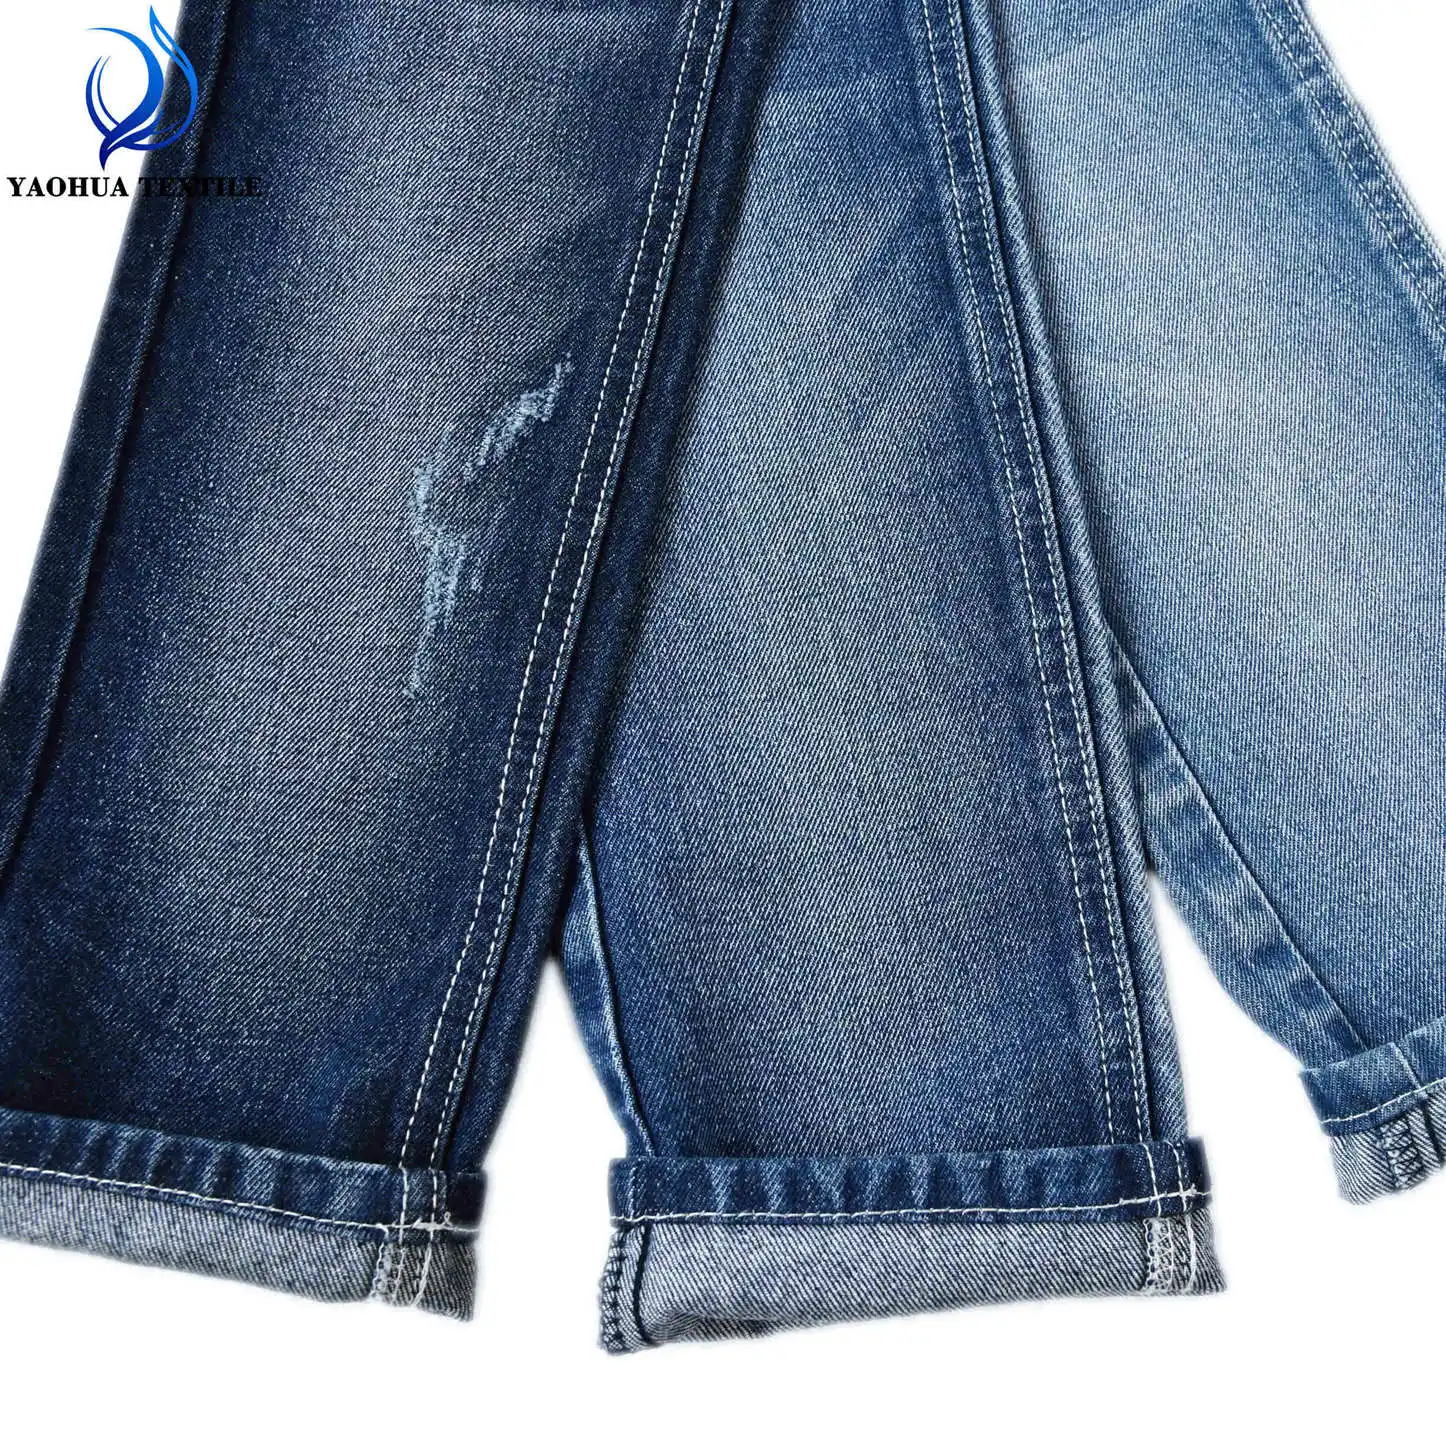 680 100% Katun Kualitas Tinggi Tanpa Meregang 11.2Oz Kain Denim Cocok untuk Jeans dan Jaket